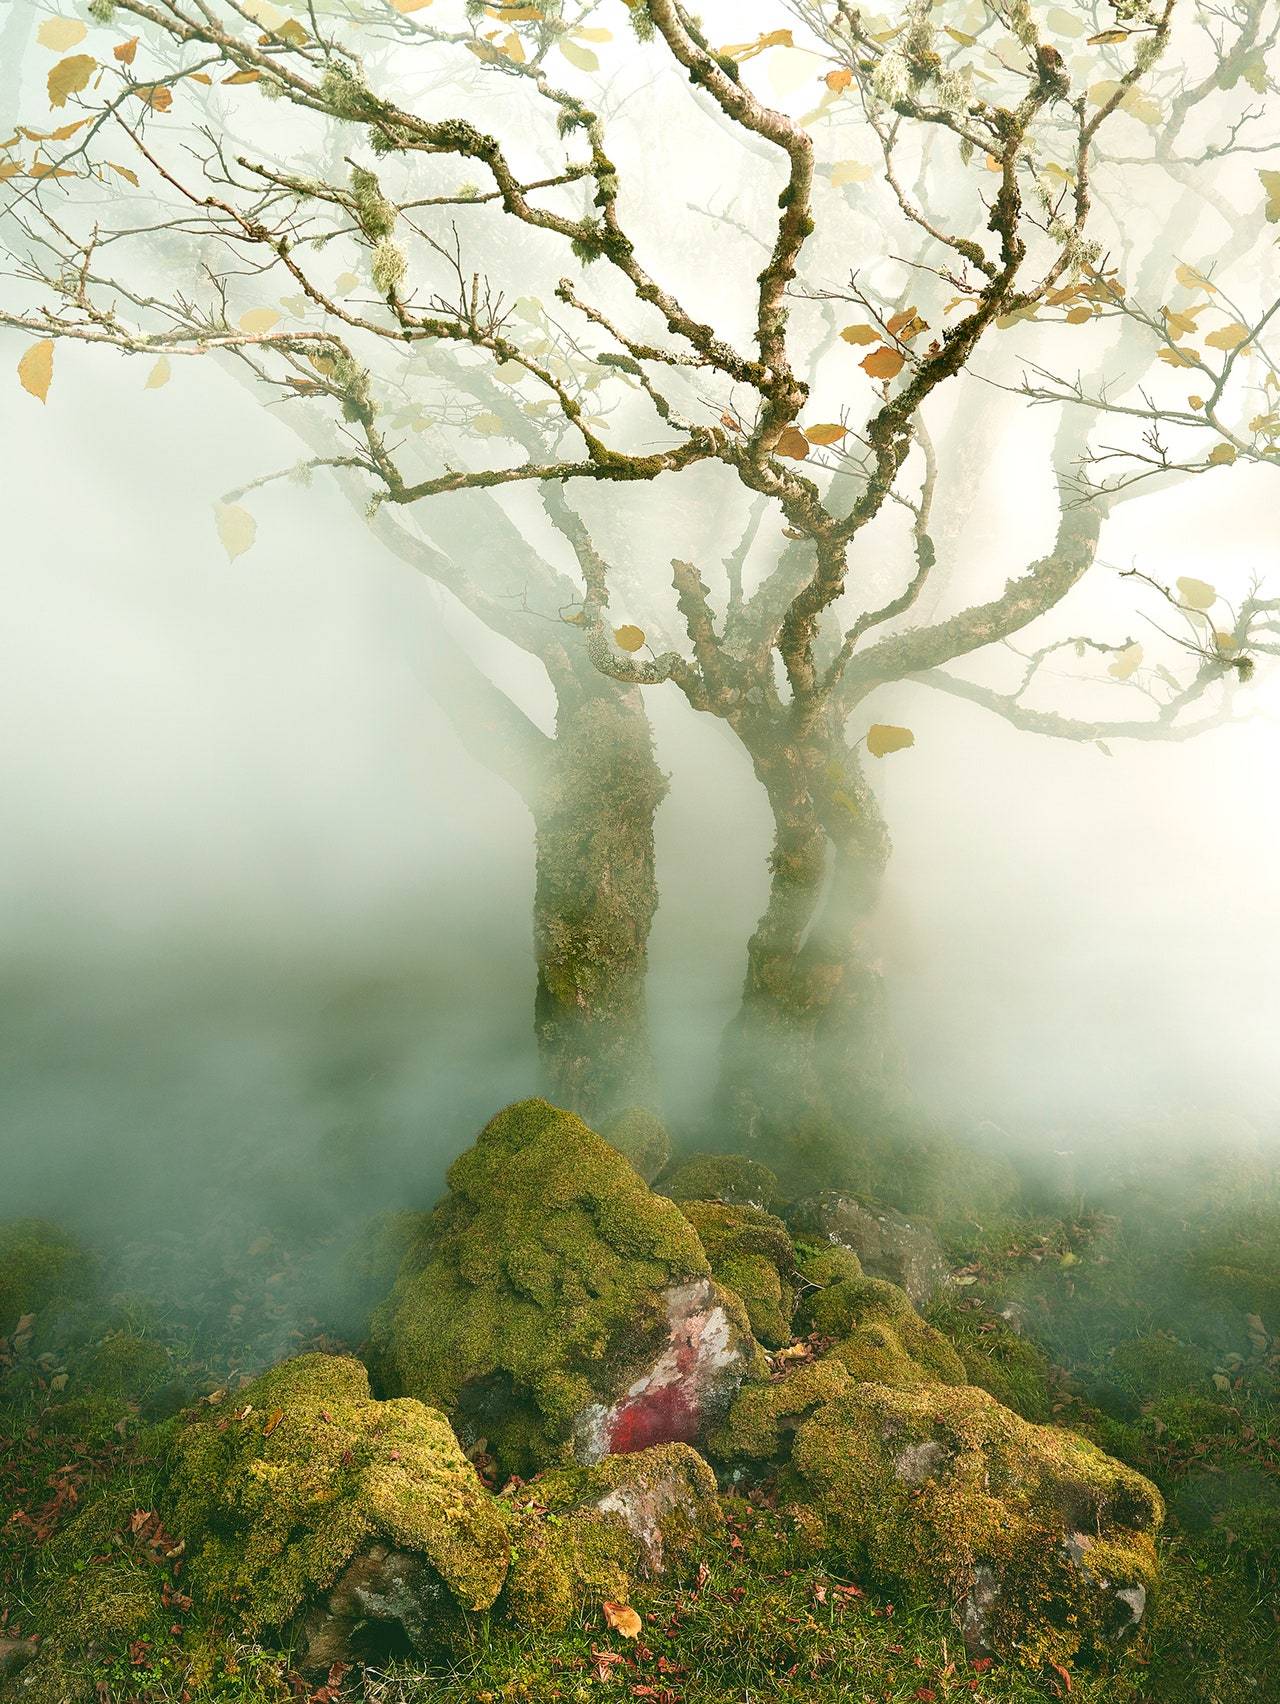 „Tree in Mist”, Fairy Glen, wyspa Skye,Szkocja, 2013
(Fot. Albert Watson)